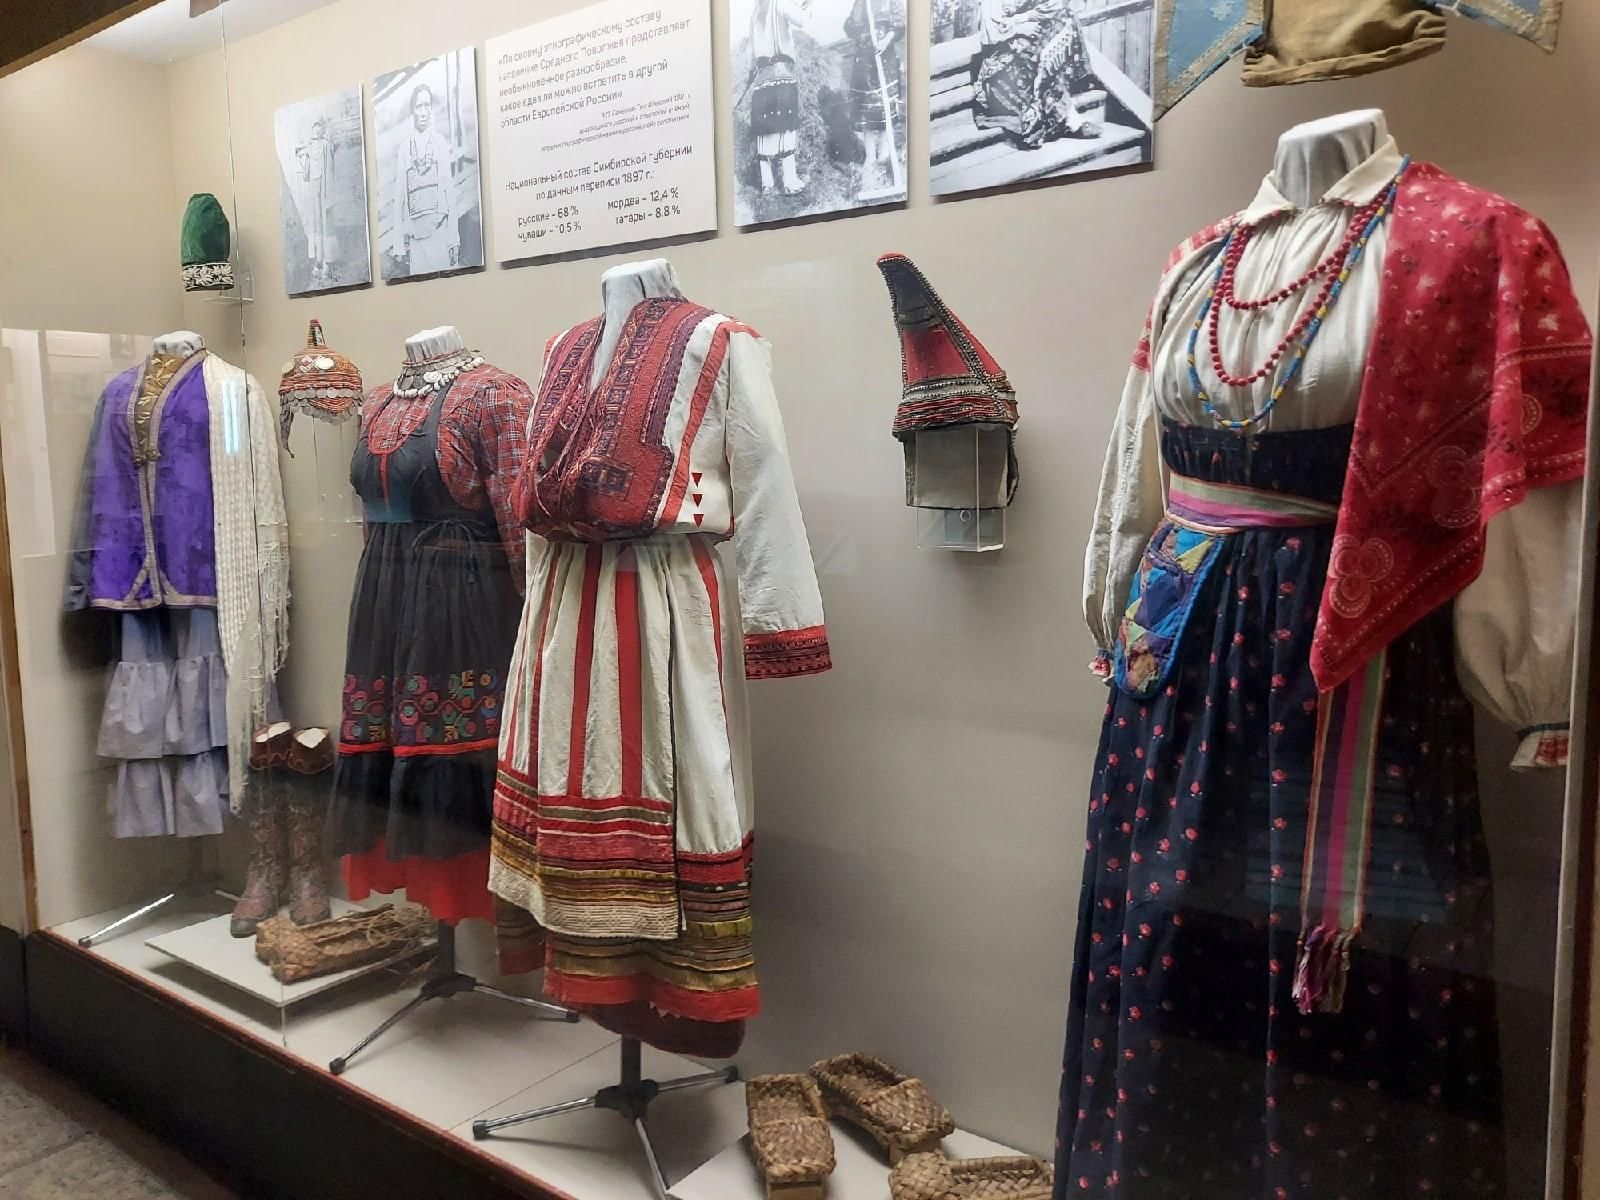 Традиционный костюм поволжья чувашский